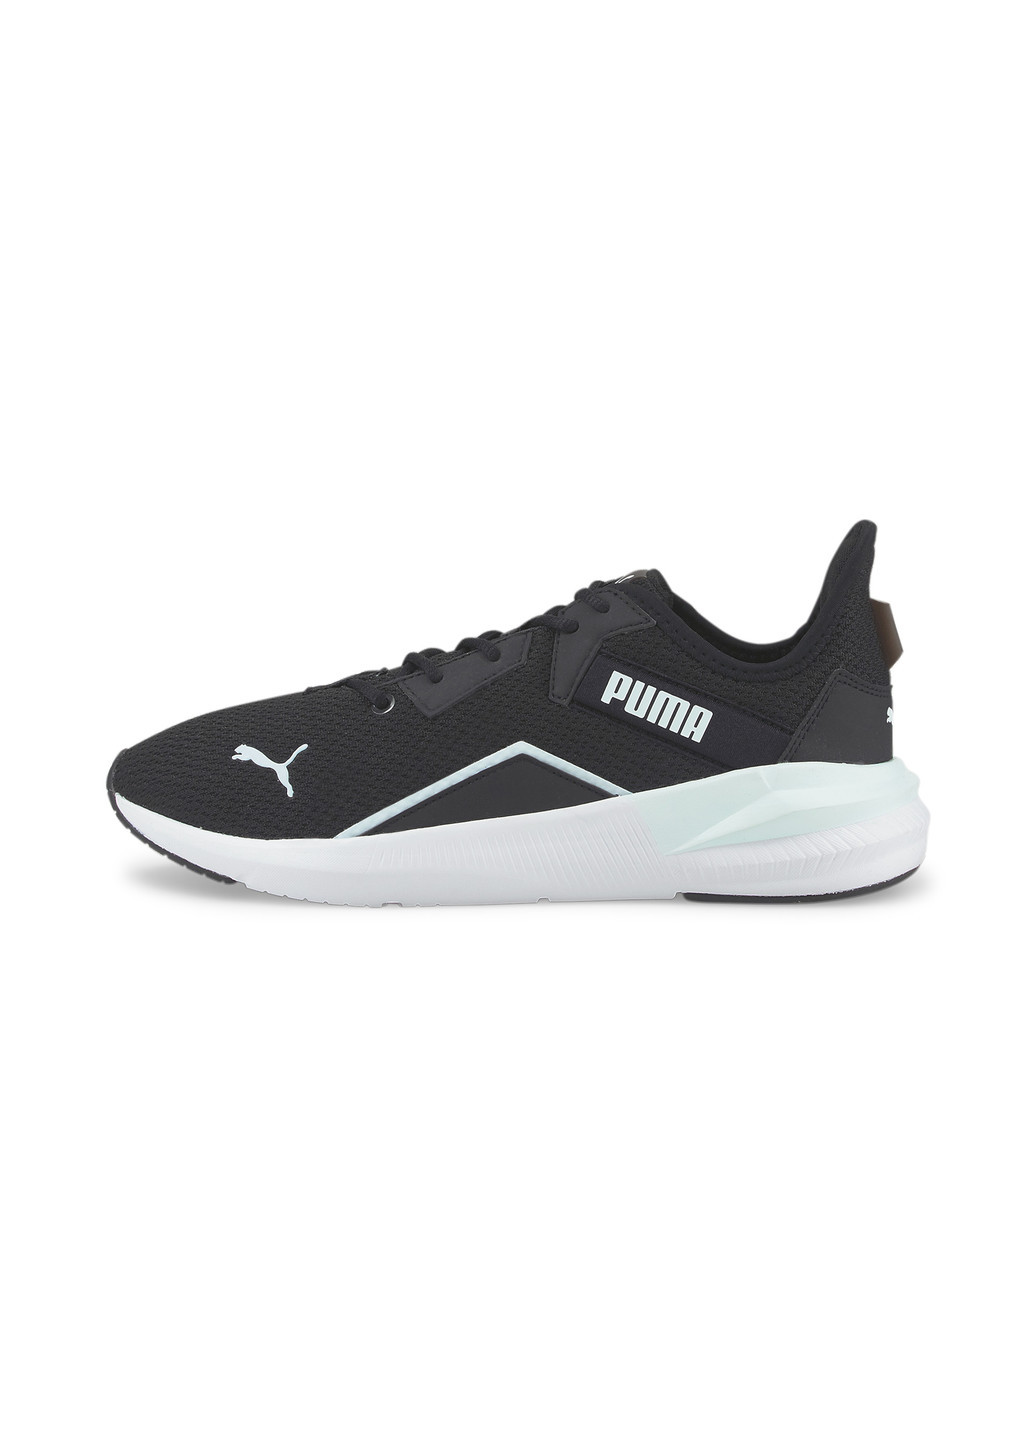 Черные всесезонные кроссовки platinum shimmer women's training shoes Puma